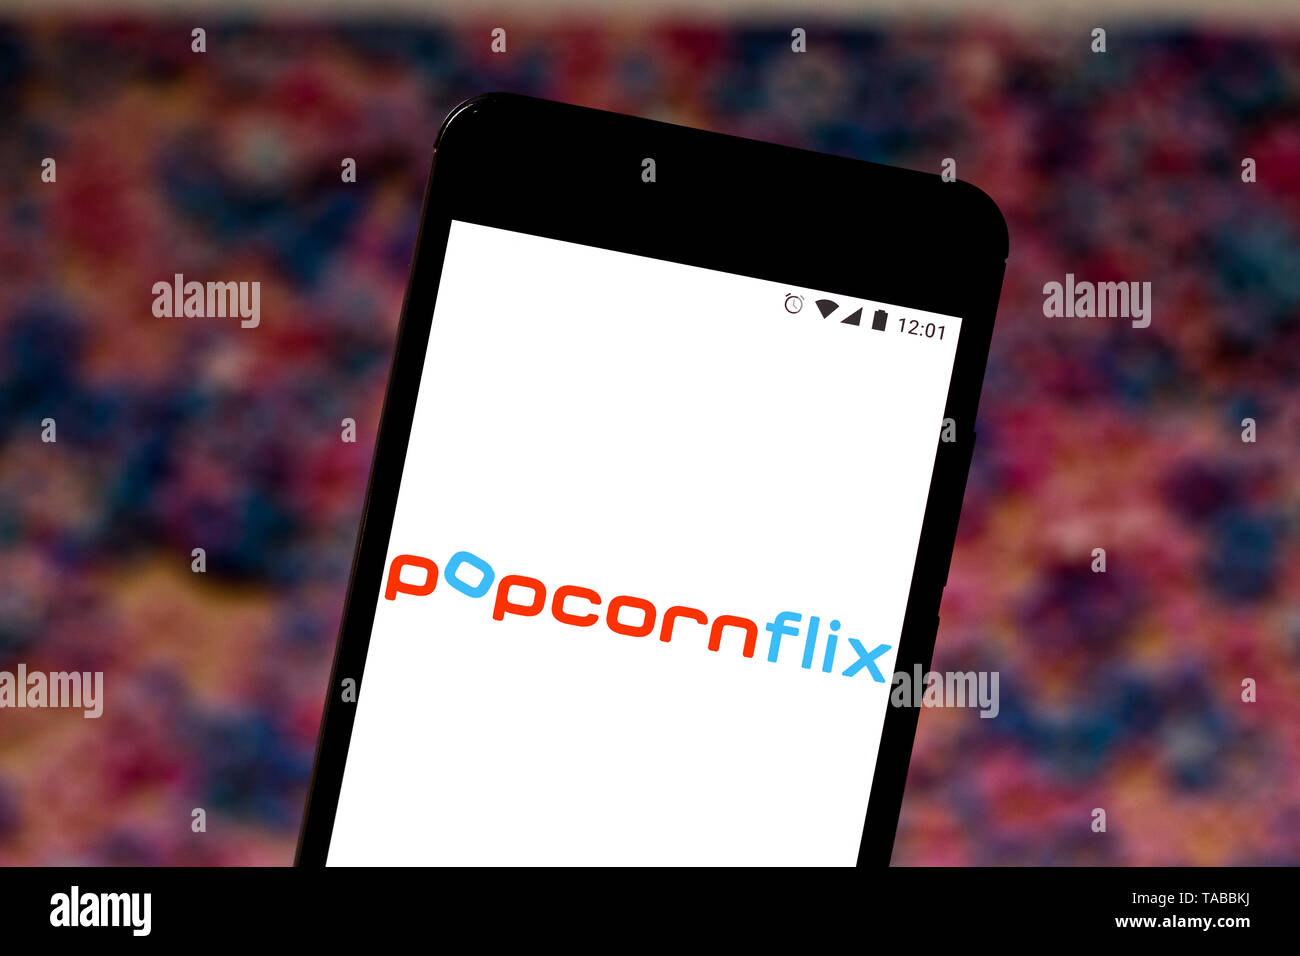 In questa foto illustrazione il logo Popcornflix si vede visualizzato su uno smartphone. Foto Stock